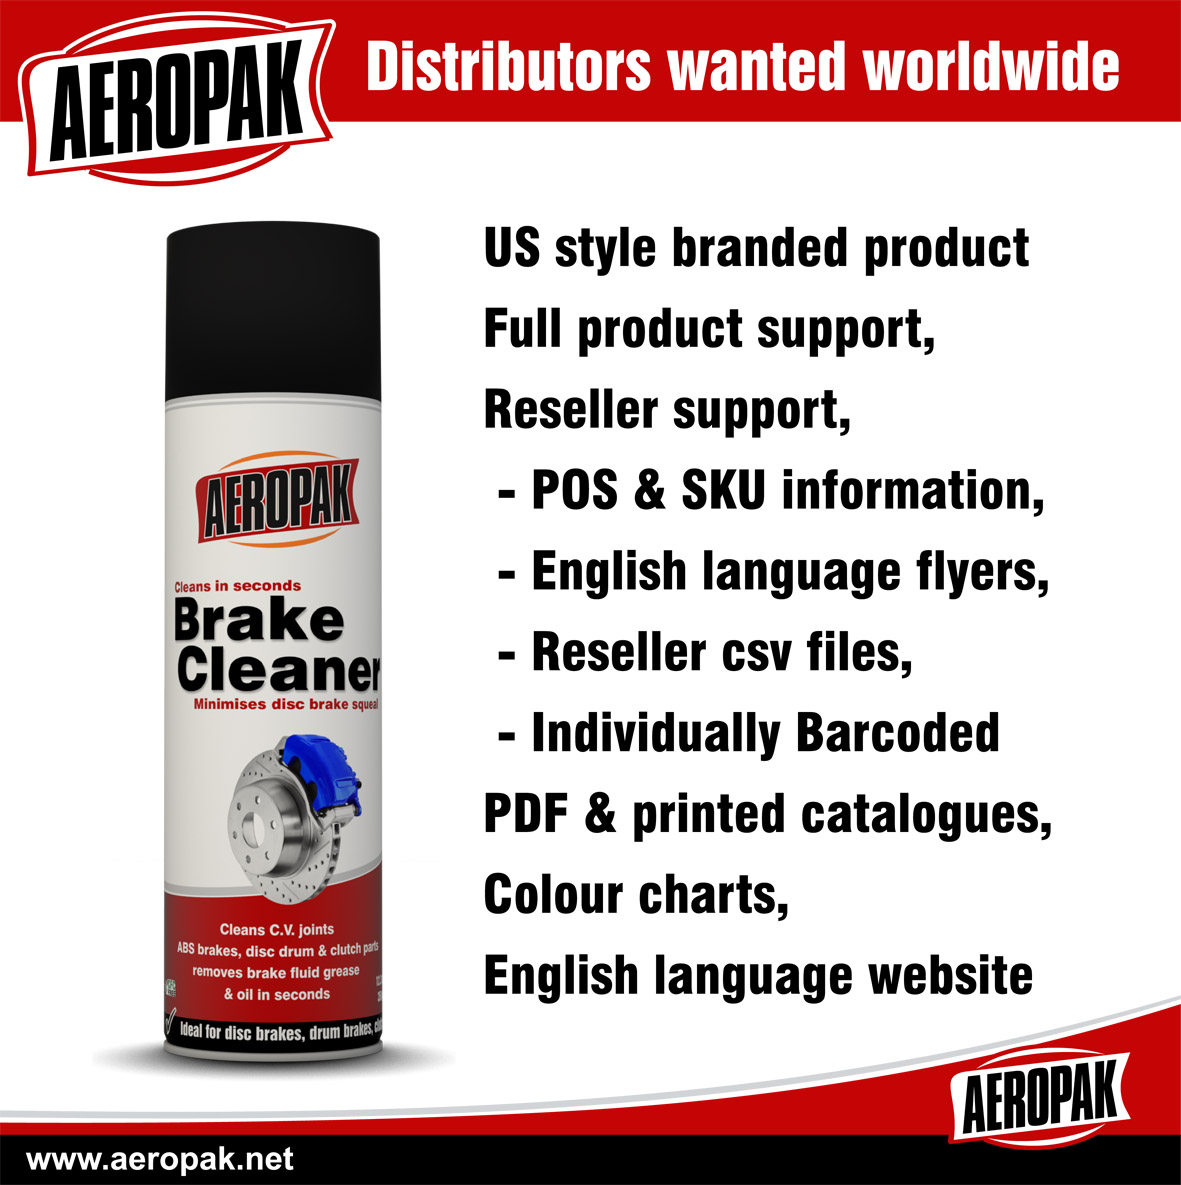 Aeropak Distributors wanted worldwide